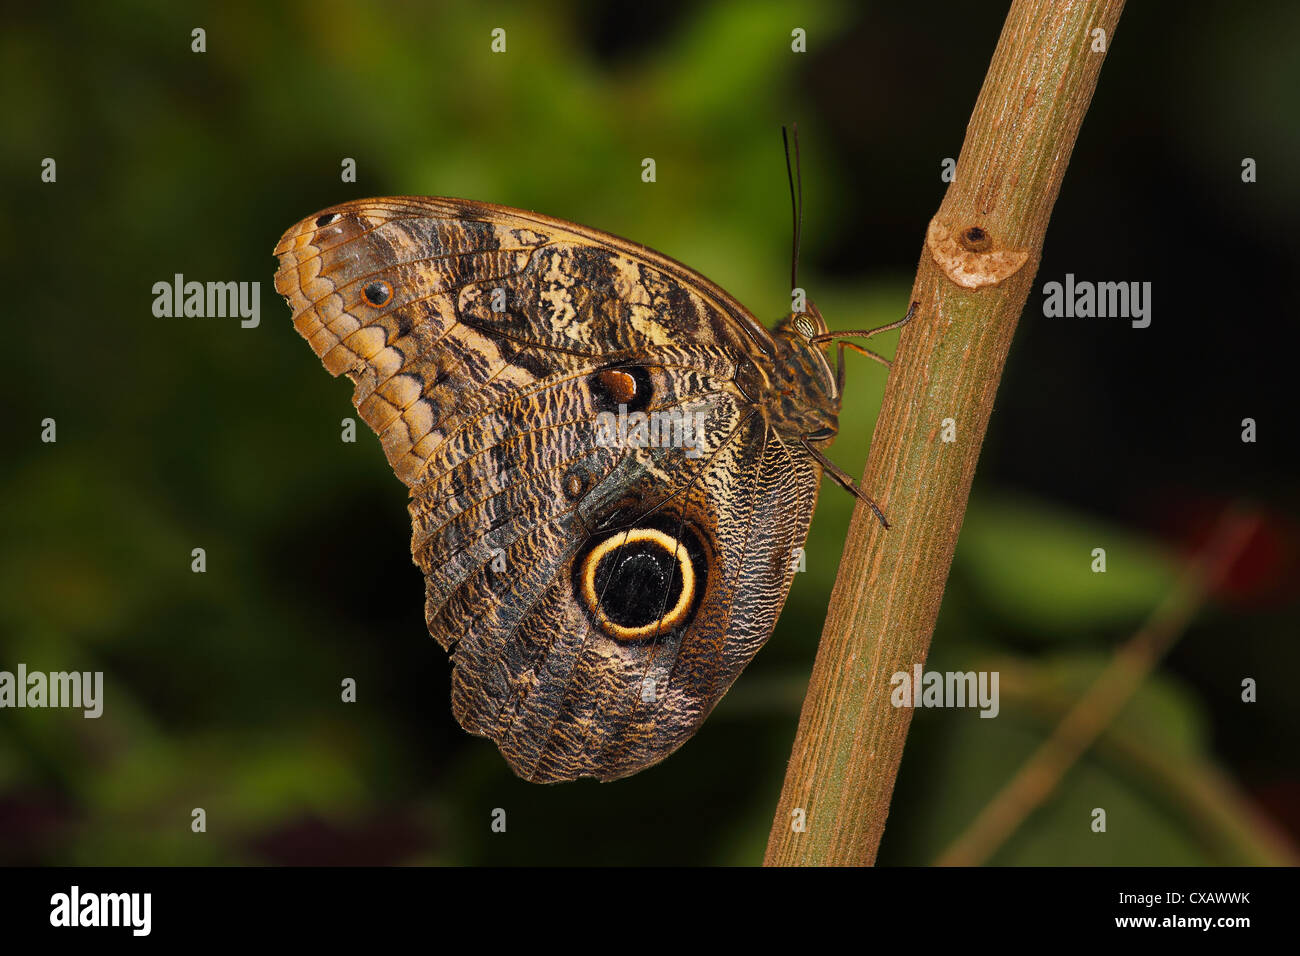 Les papillons dans le genre Caligo sont communément appelés des papillons, après leurs taches oculaires énormes qui ressemblent à des yeux des chouettes Banque D'Images